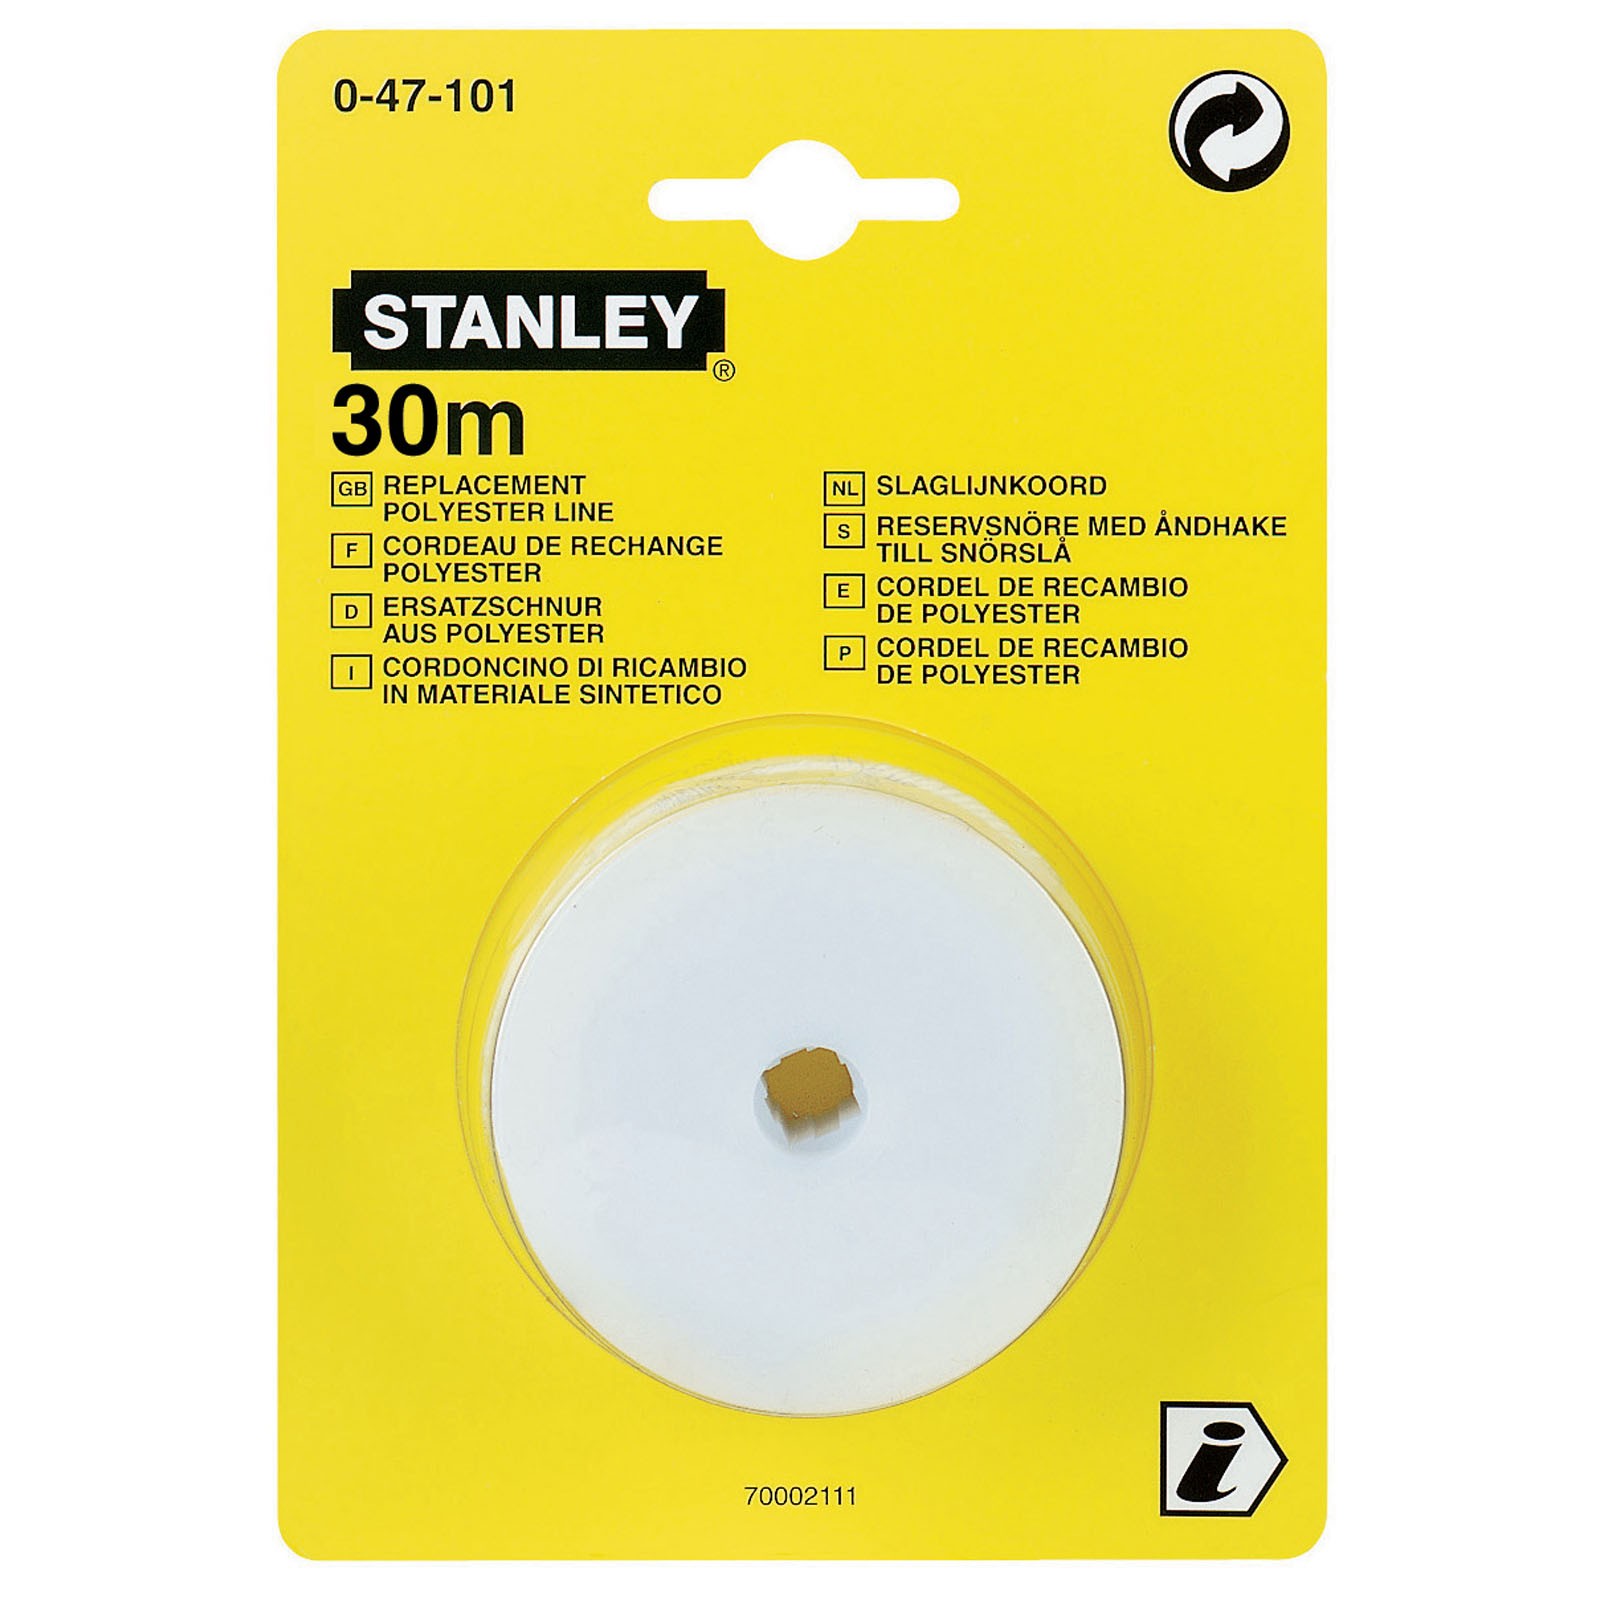 STANLEY Ersatzschlagschnur 0-47-101 30m Ersatzschlagschnur für Schlagschnurgerät von STANLEY®